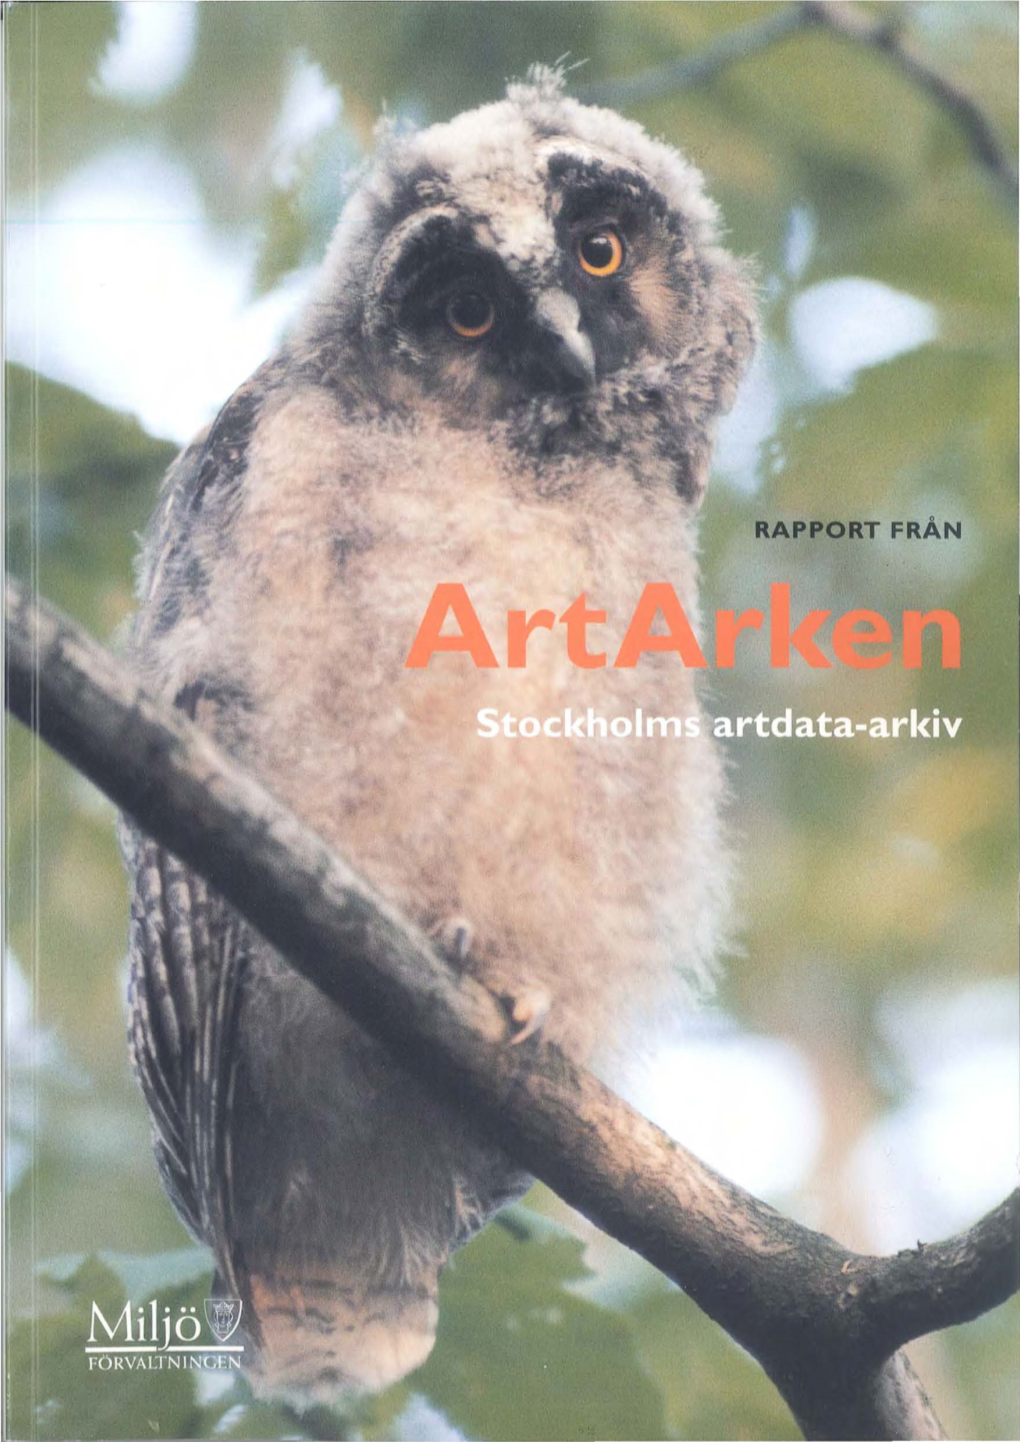 Rapport Från Artarken, Stockholms Artdata-Arkiv